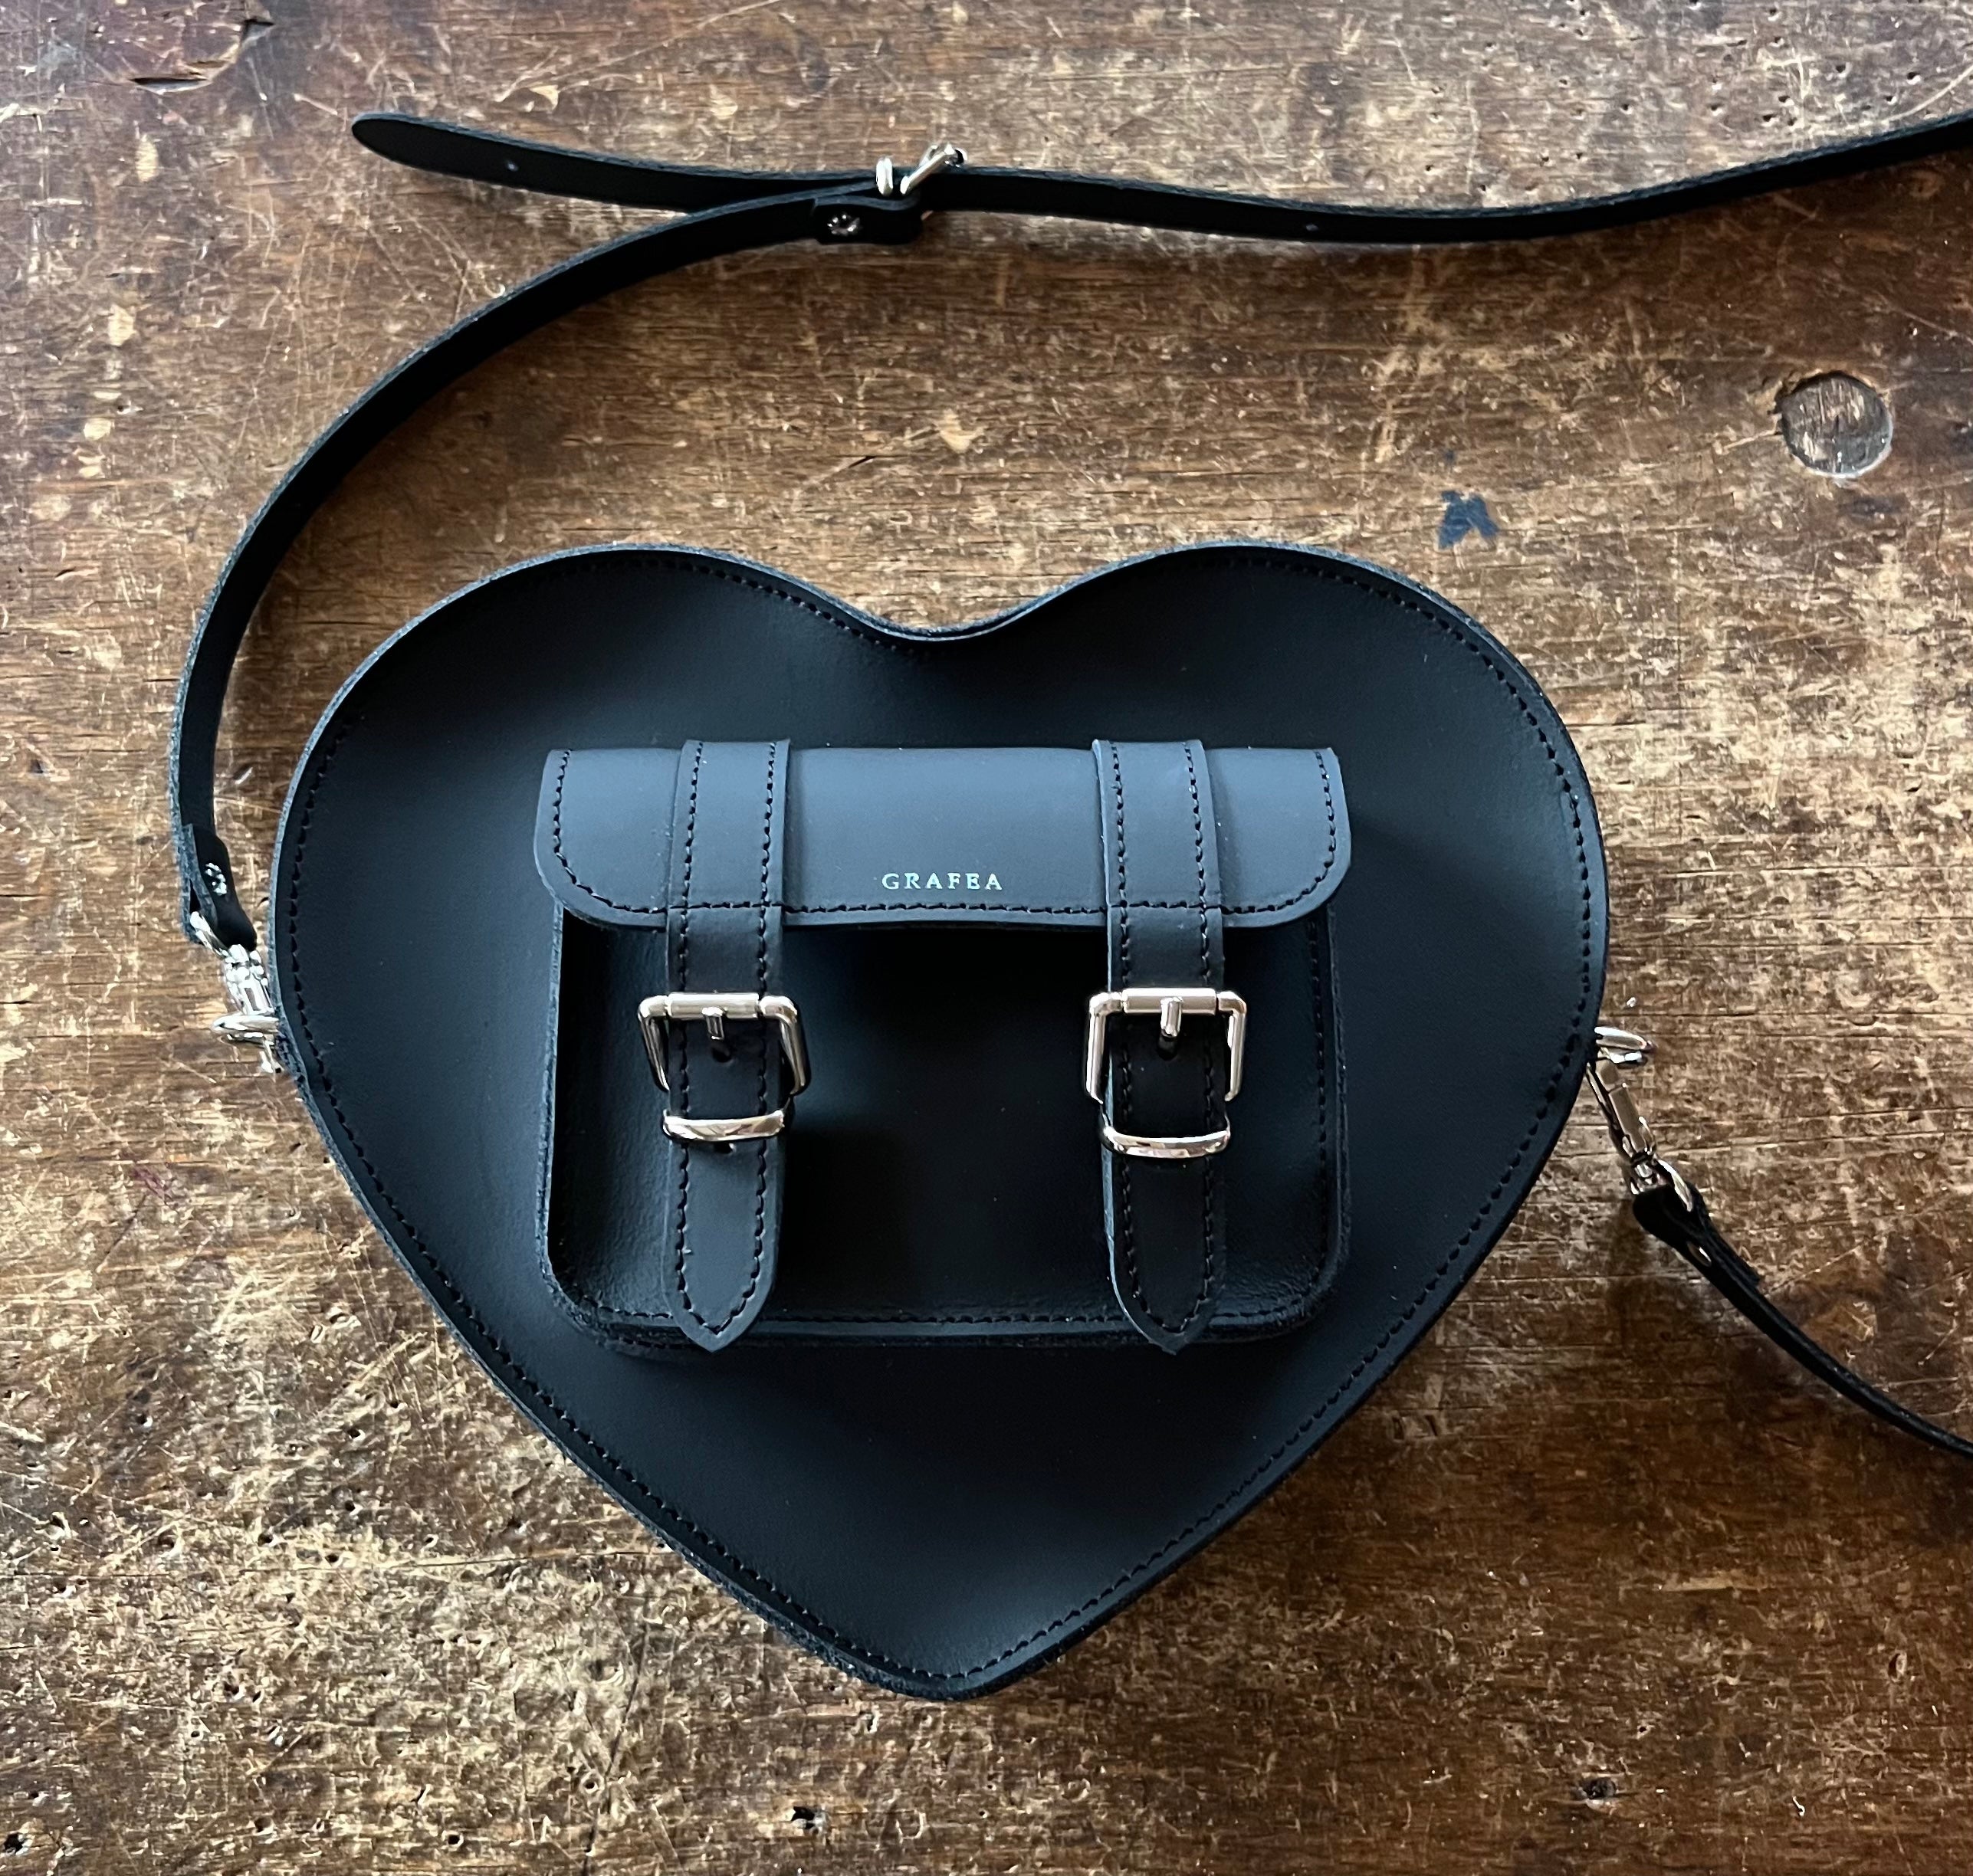 Dr. Martens Heart Shaped Backpack - Black